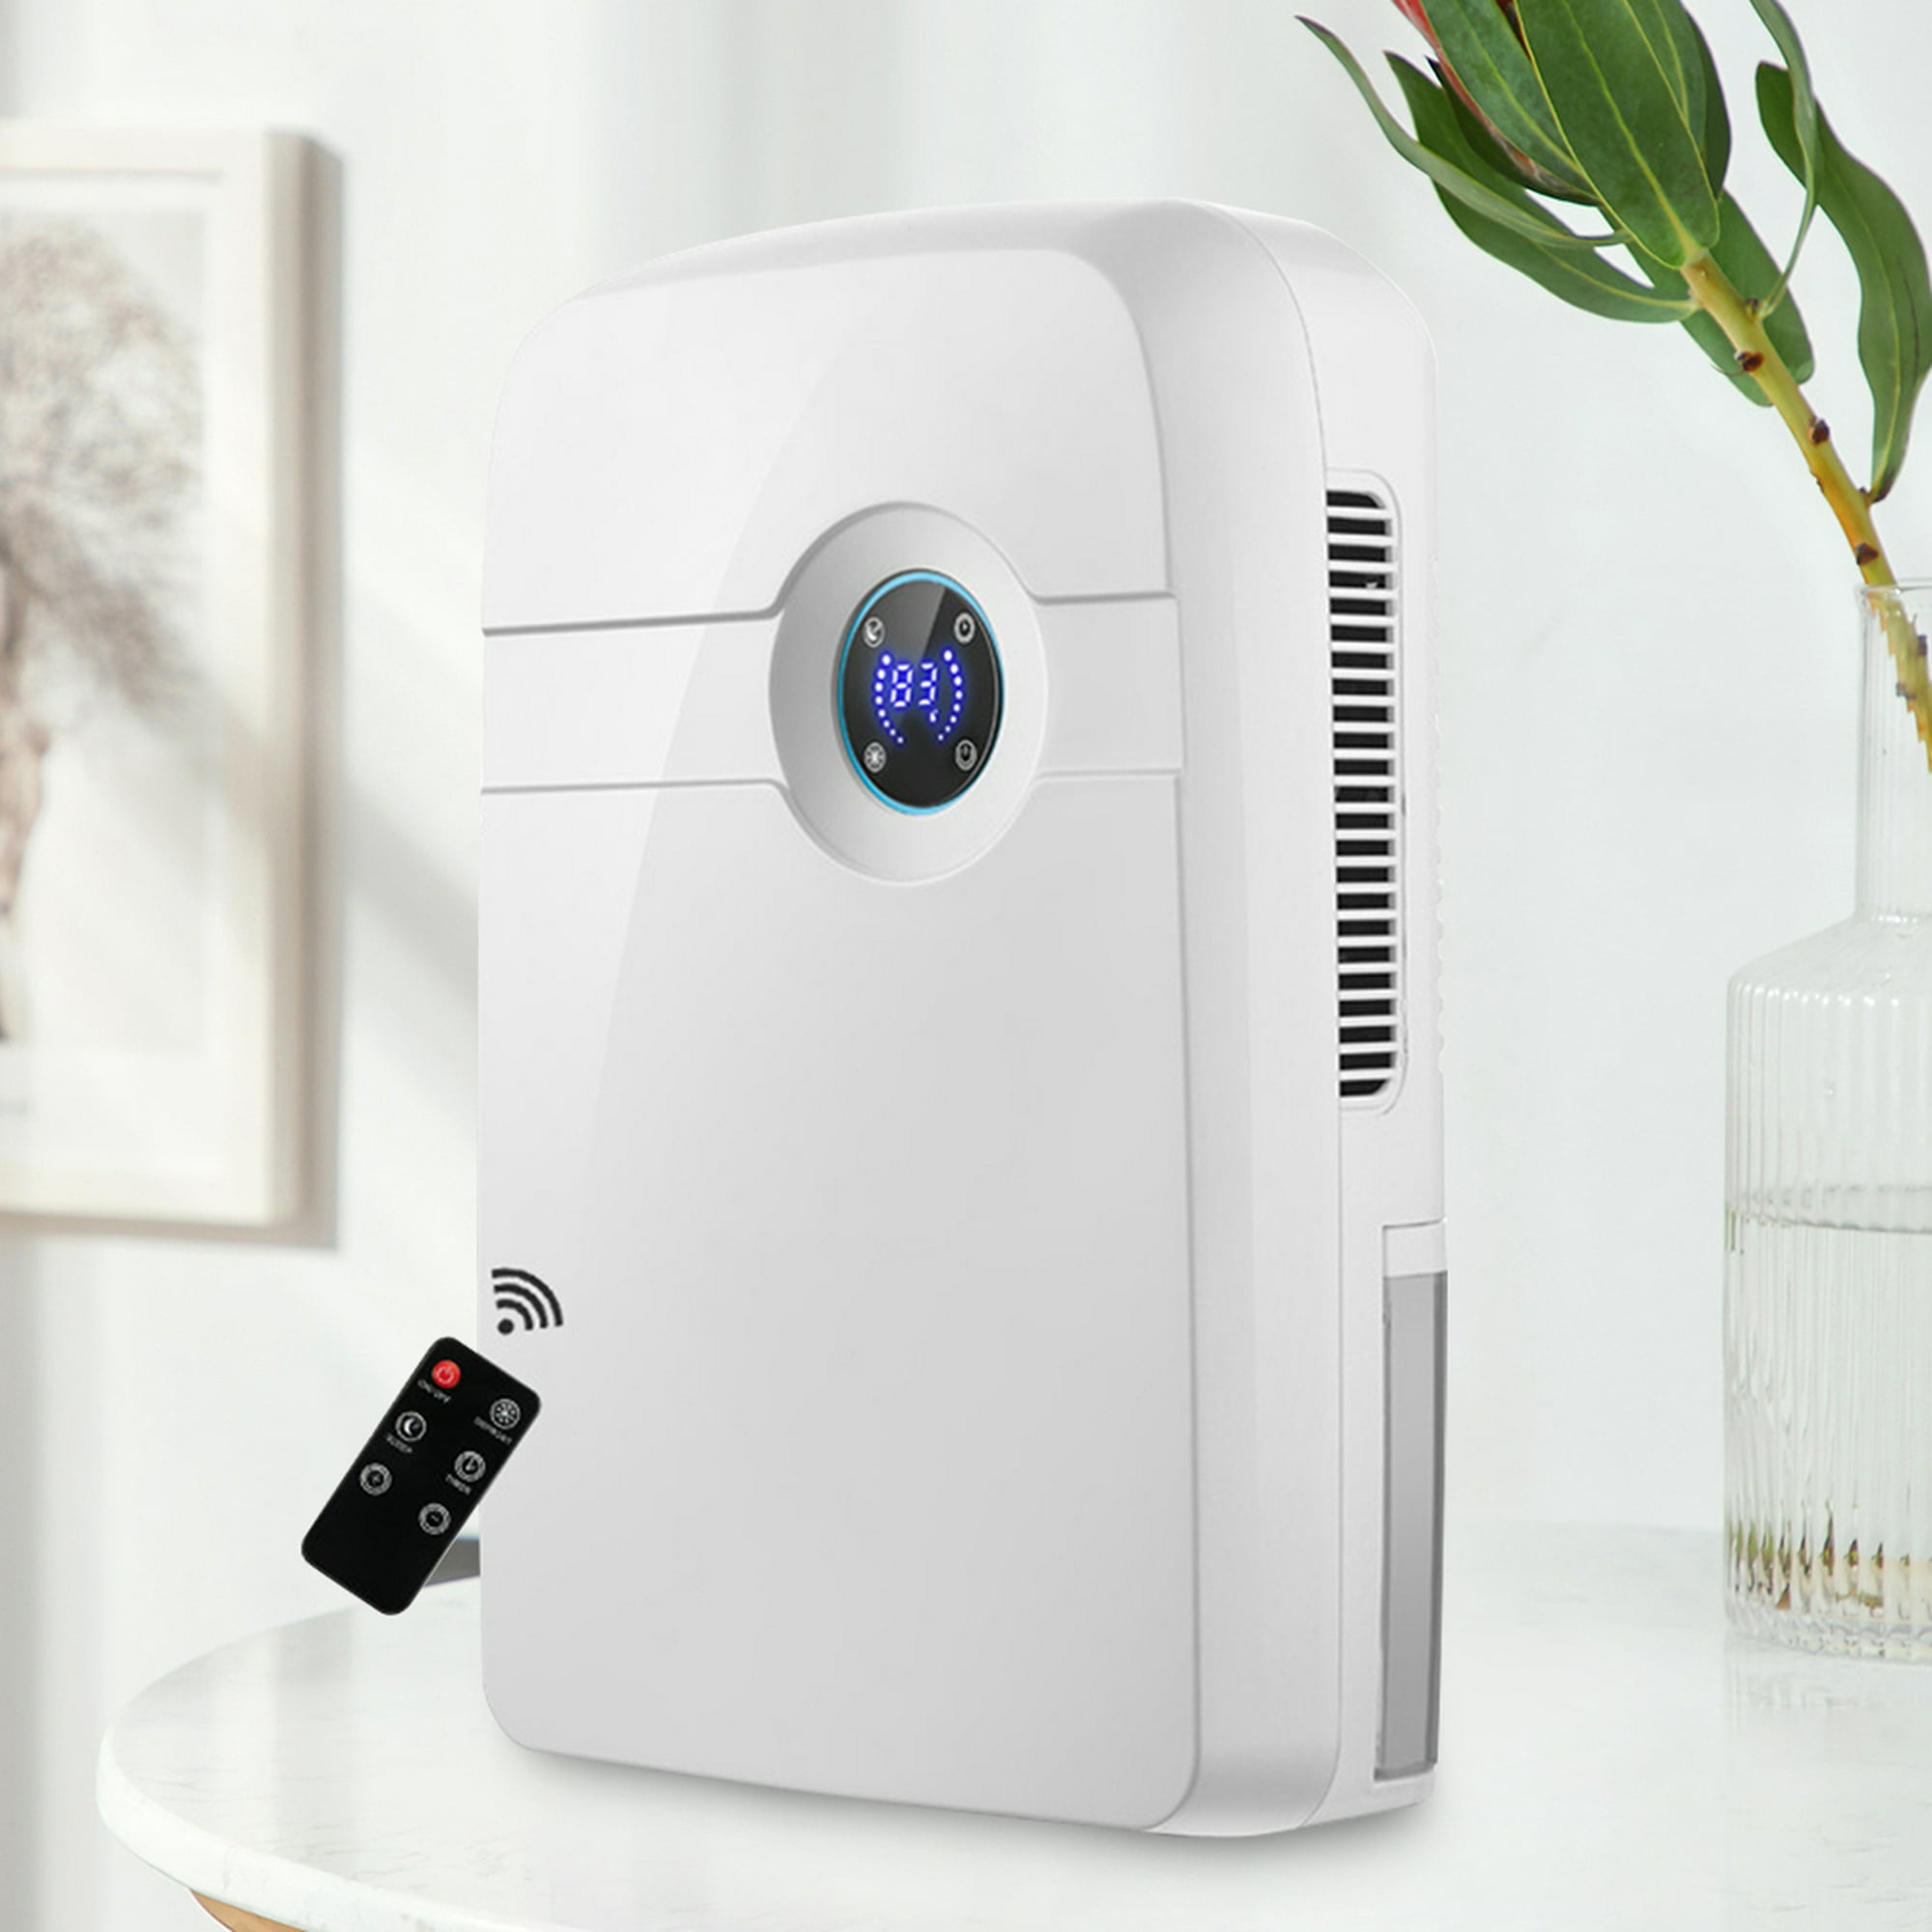  Deshumidificador eléctrico para el hogar, ultra silencioso mini  secador de aire USB para alta humedad, absorbente portátil para eliminar la  humedad, ahorro de energía, deshumidificador de aire de : Hogar y